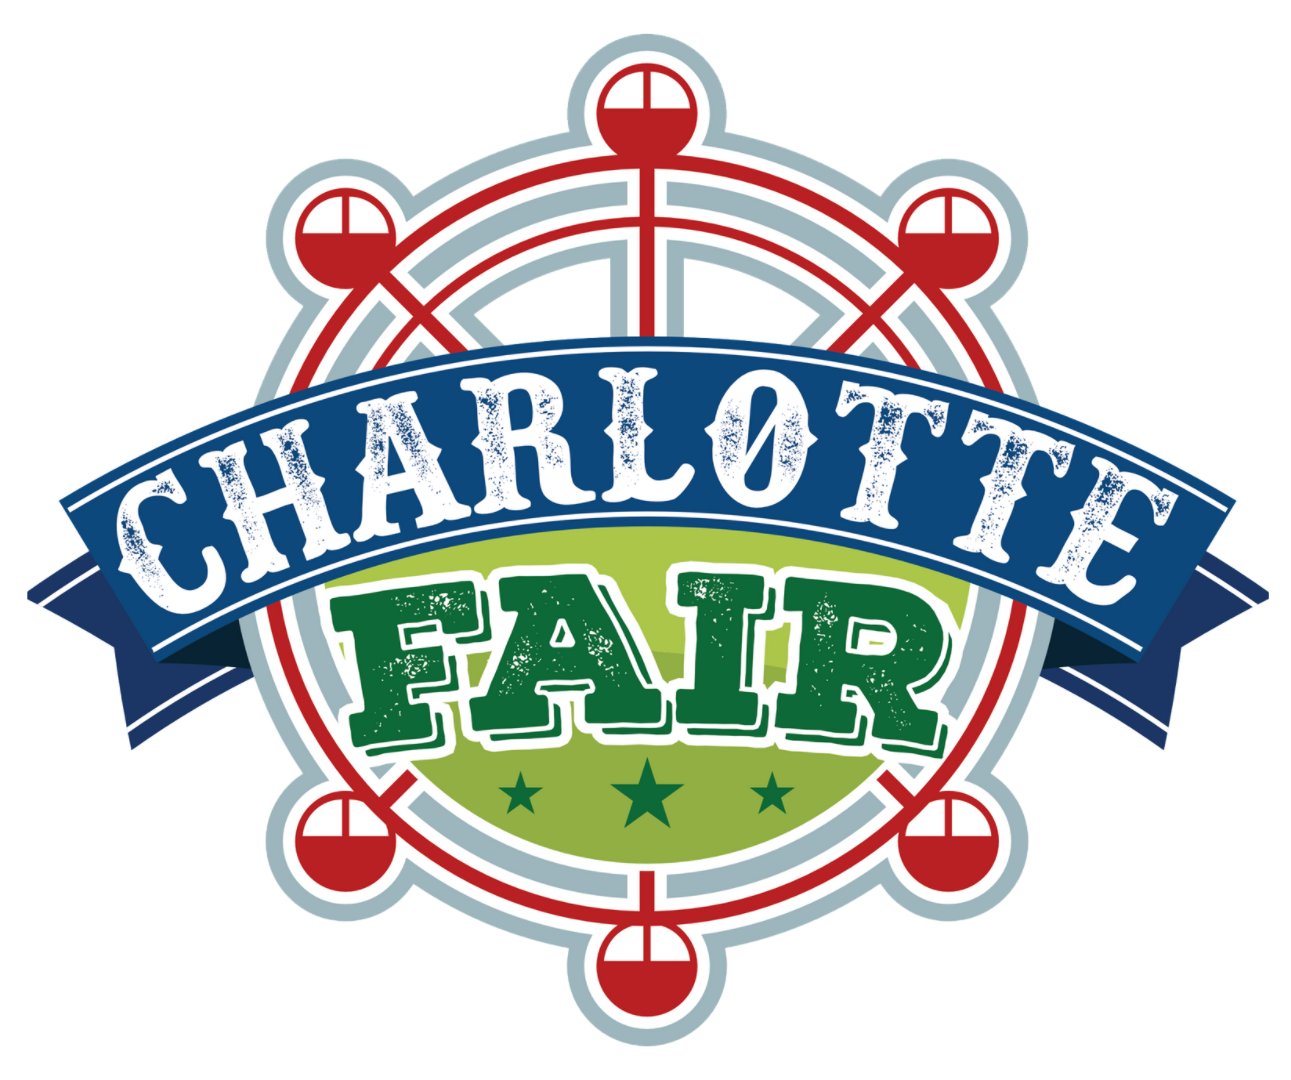 Charlotte Fair